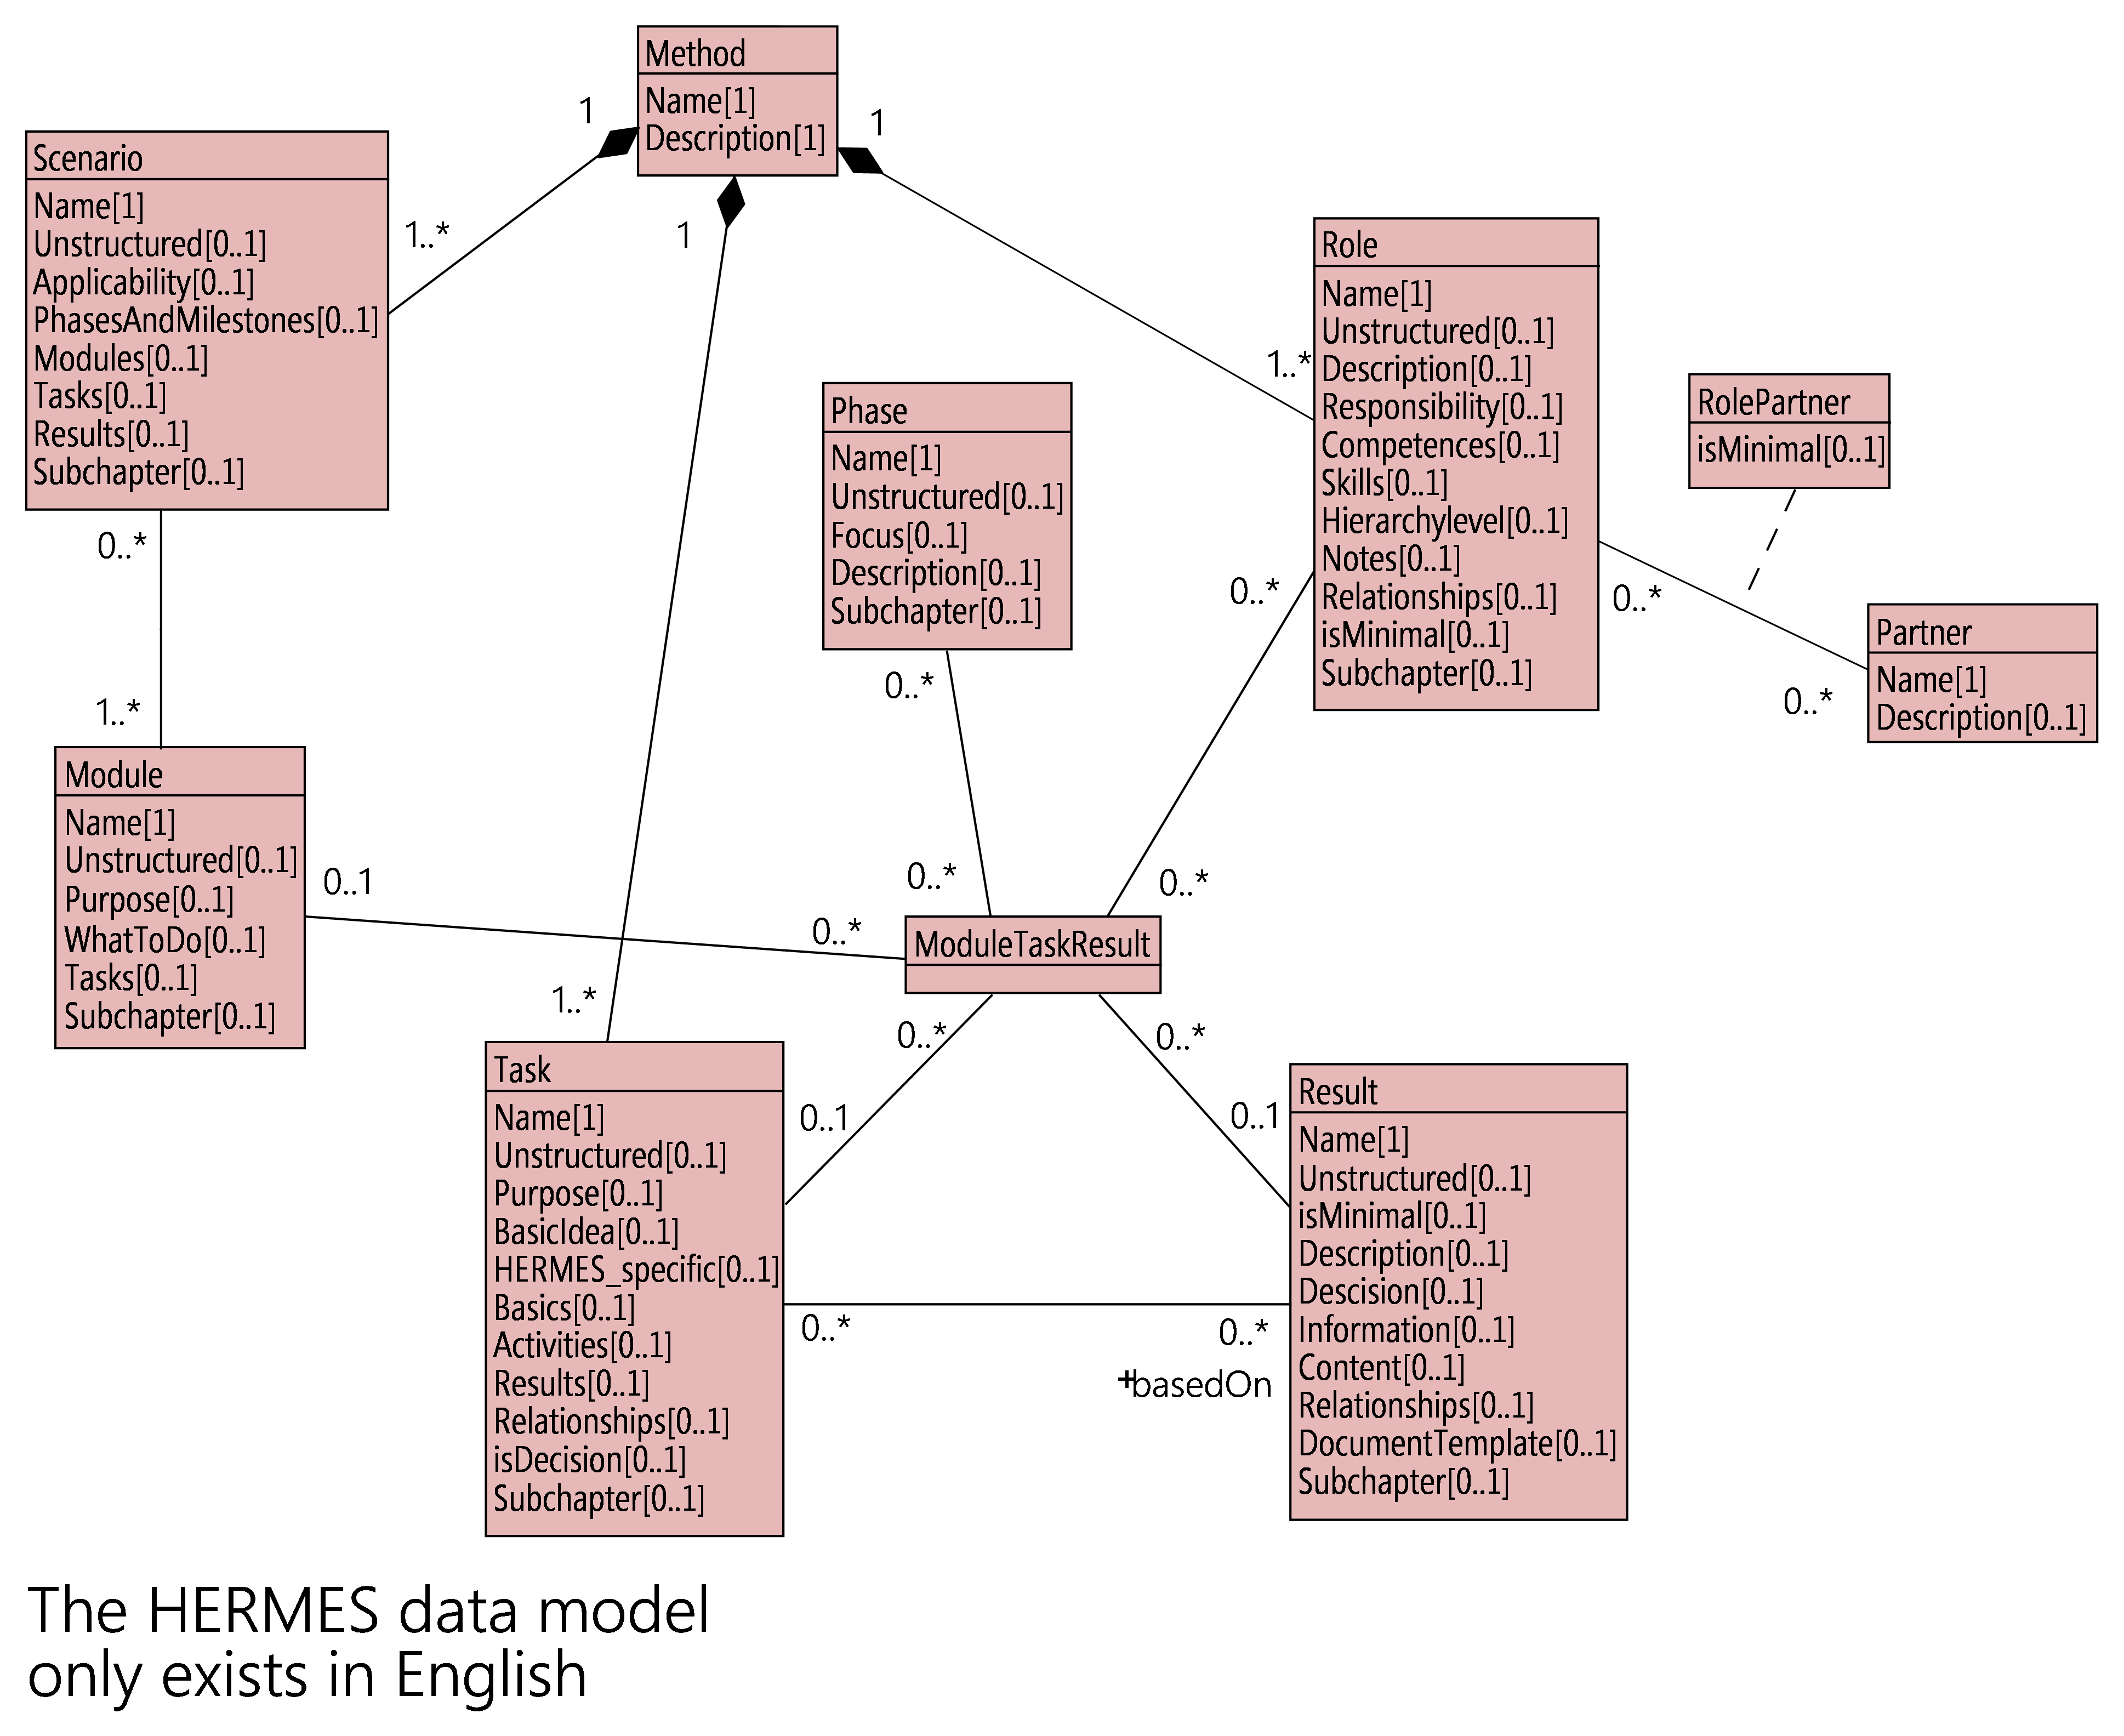 Figure 11: Diagram of the HERMES data model